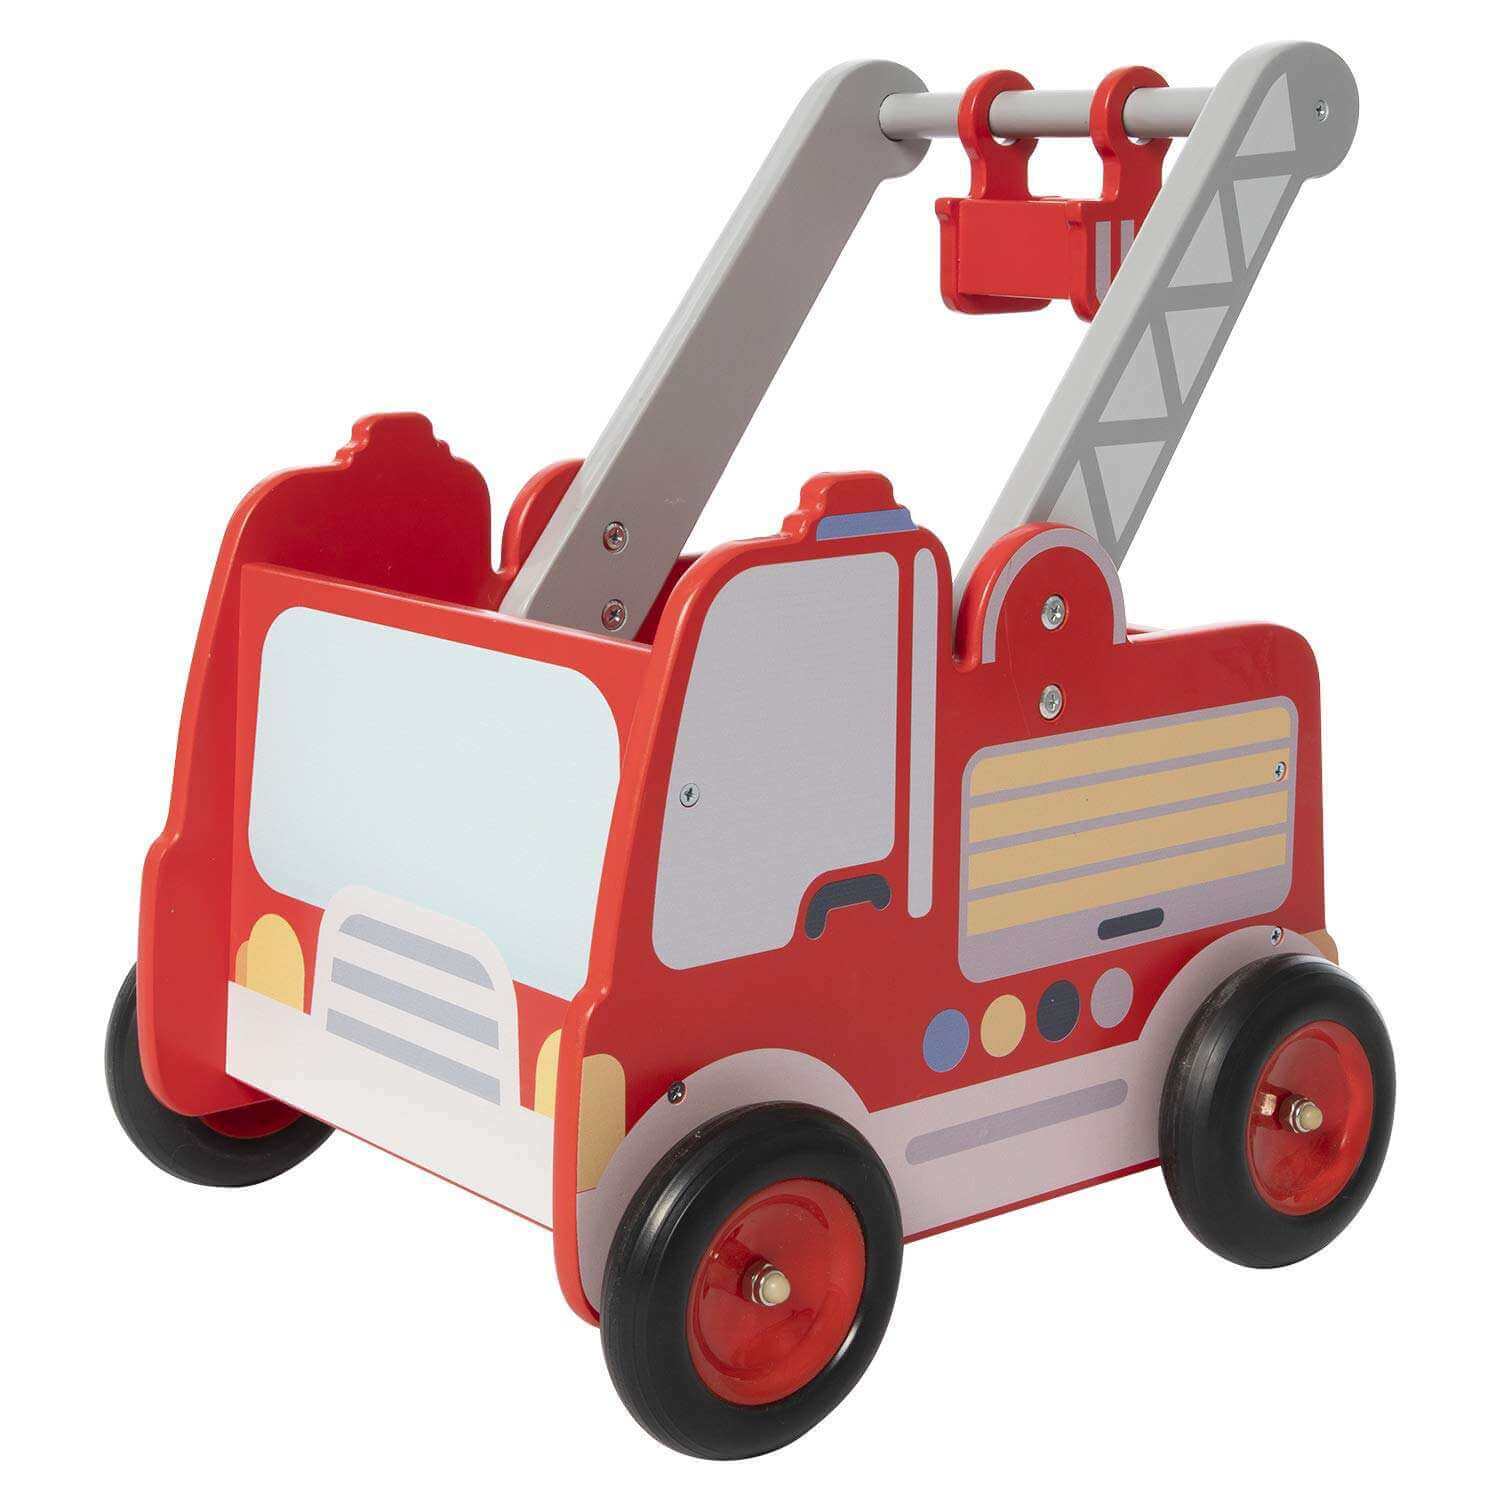 2-in-1 Wooden Toy Storage & Baby Walker - Fire Engine